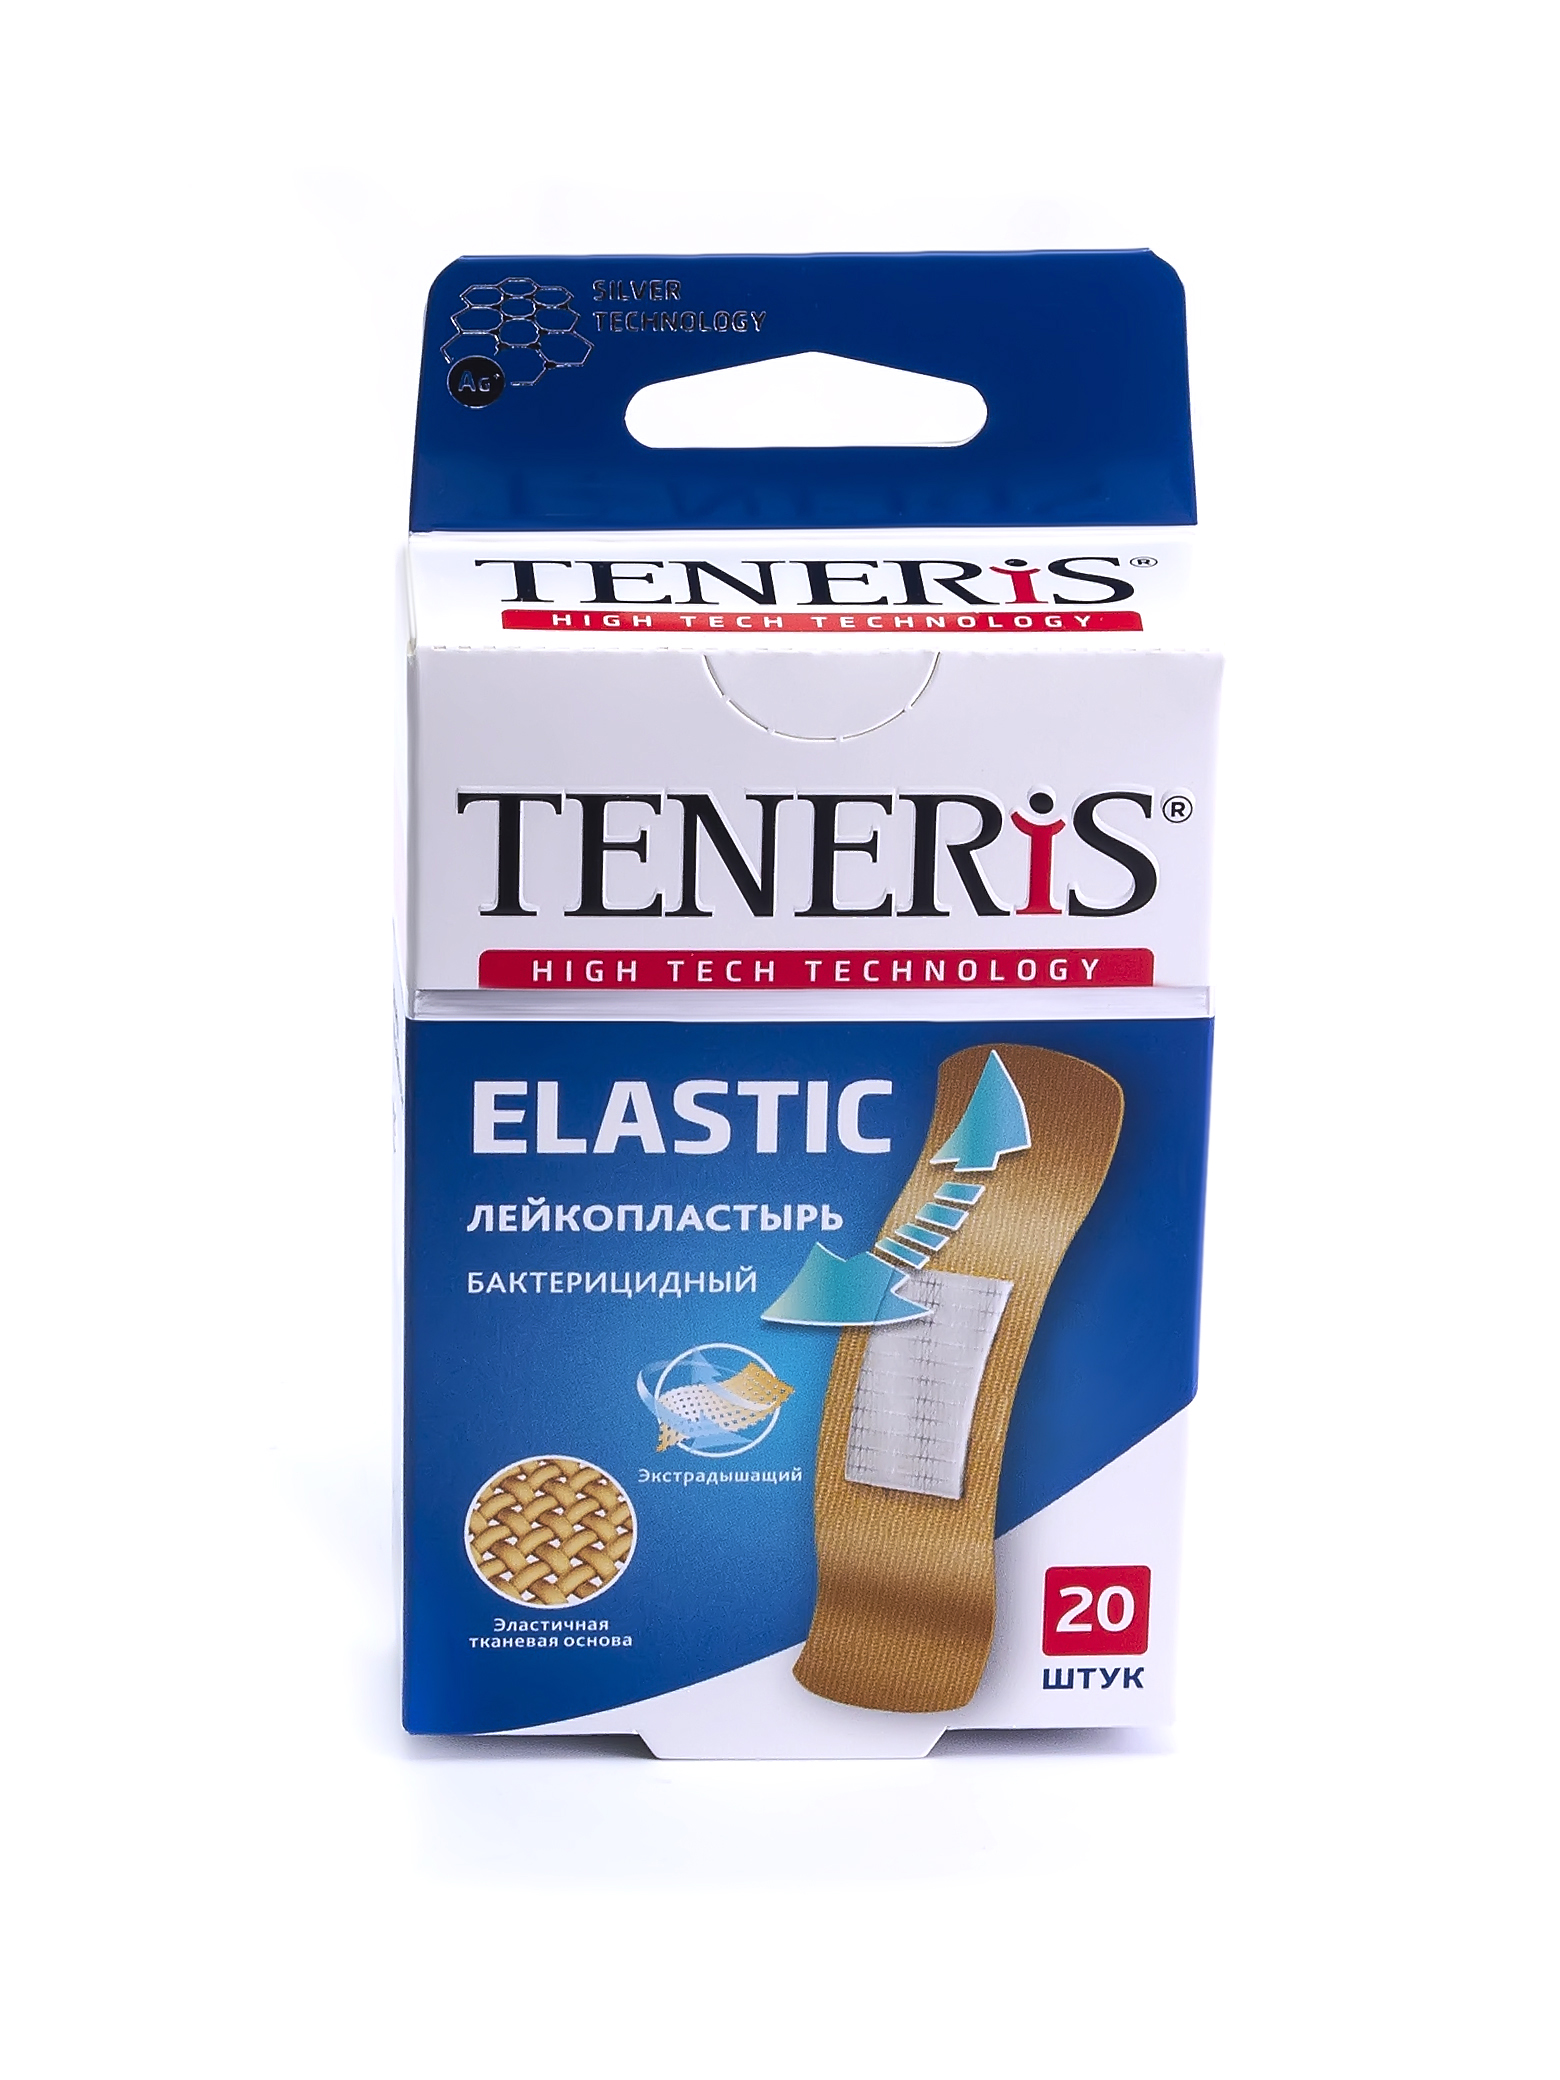 Купить Пластырь Teneris Elastic бактерицидный с ионами серебра на тканевой основе 20 шт.